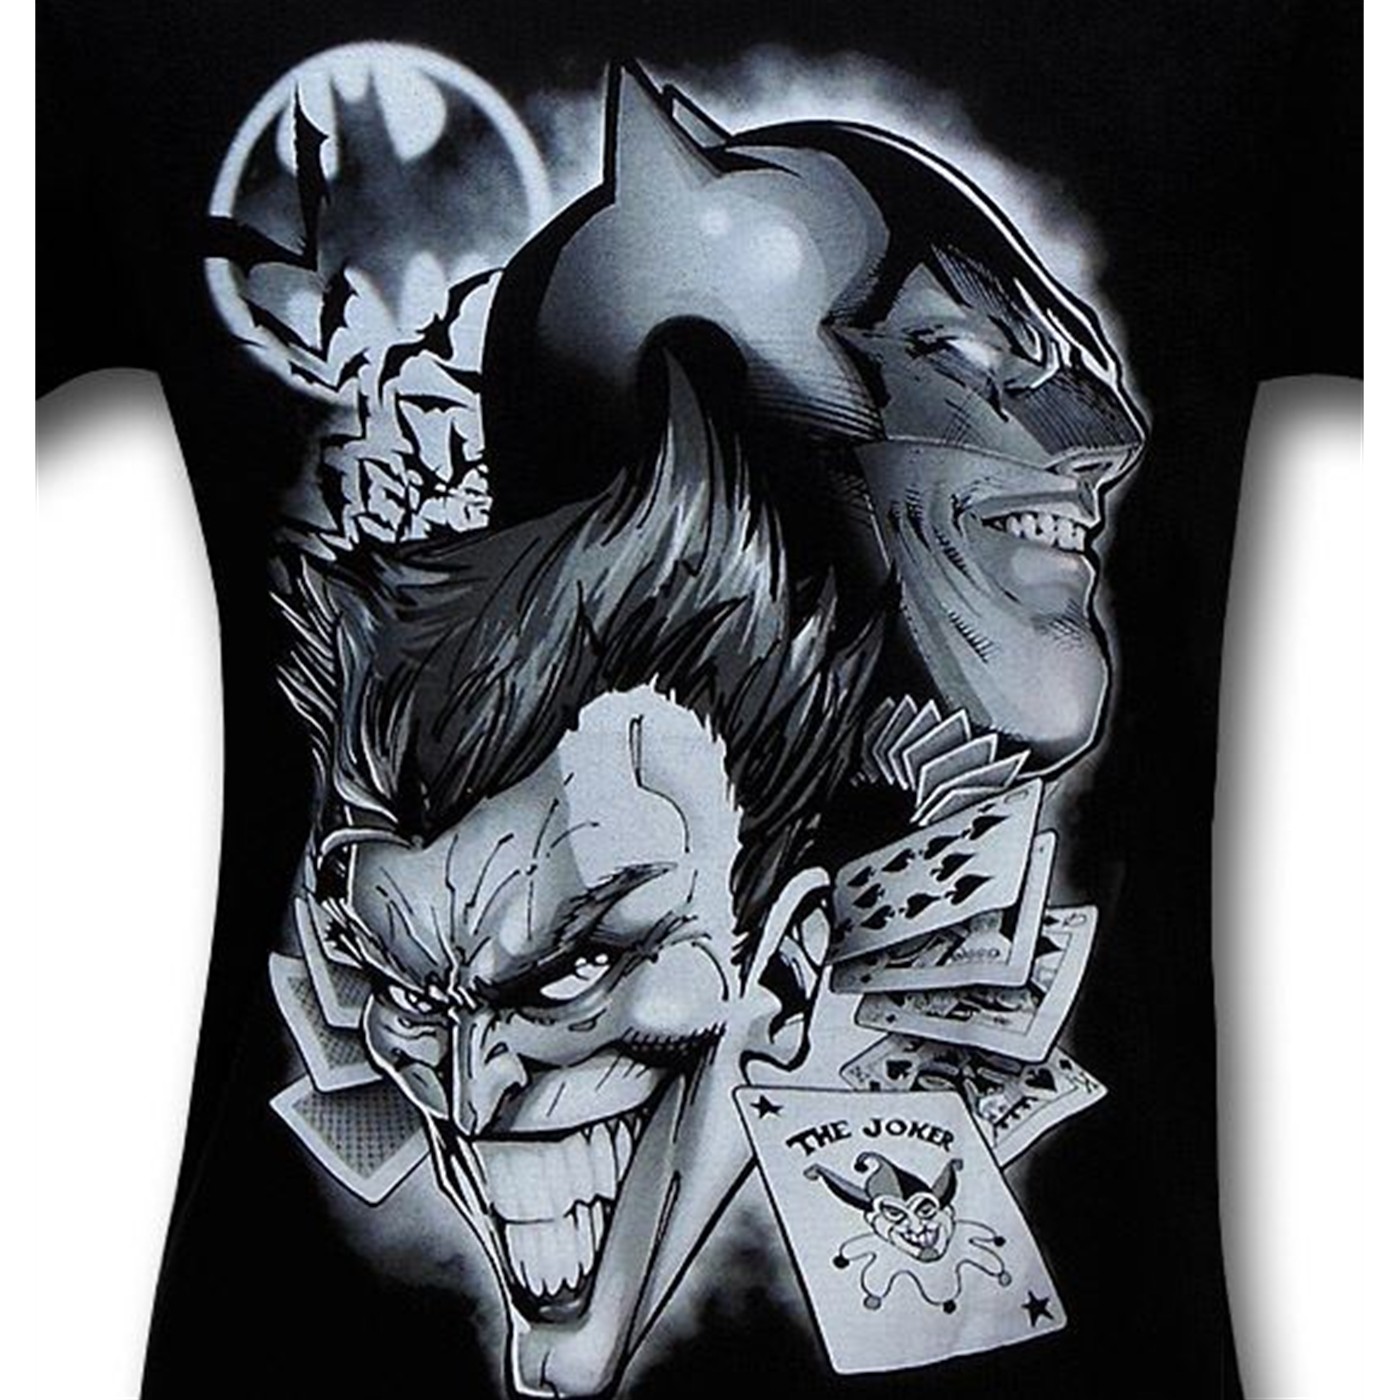 Batman Joker Bats And Cards T-Shirt